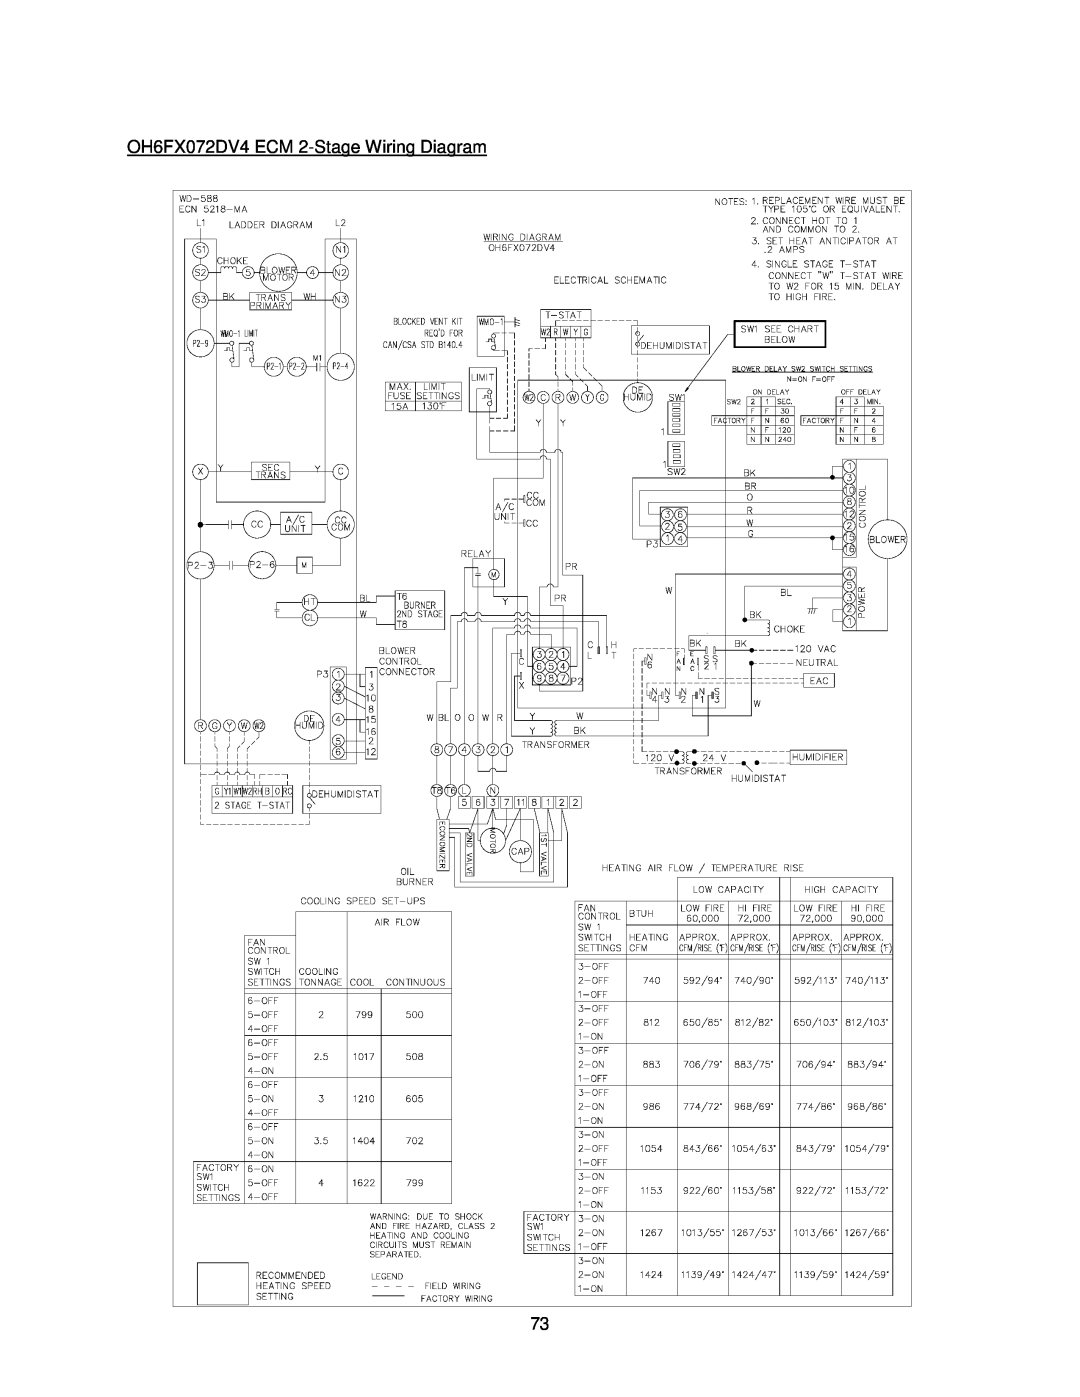 Thermo Products OHFA199DV5B, OHFA199DV5R operation manual OH6FX072DV4 ECM 2-StageWiring Diagram 